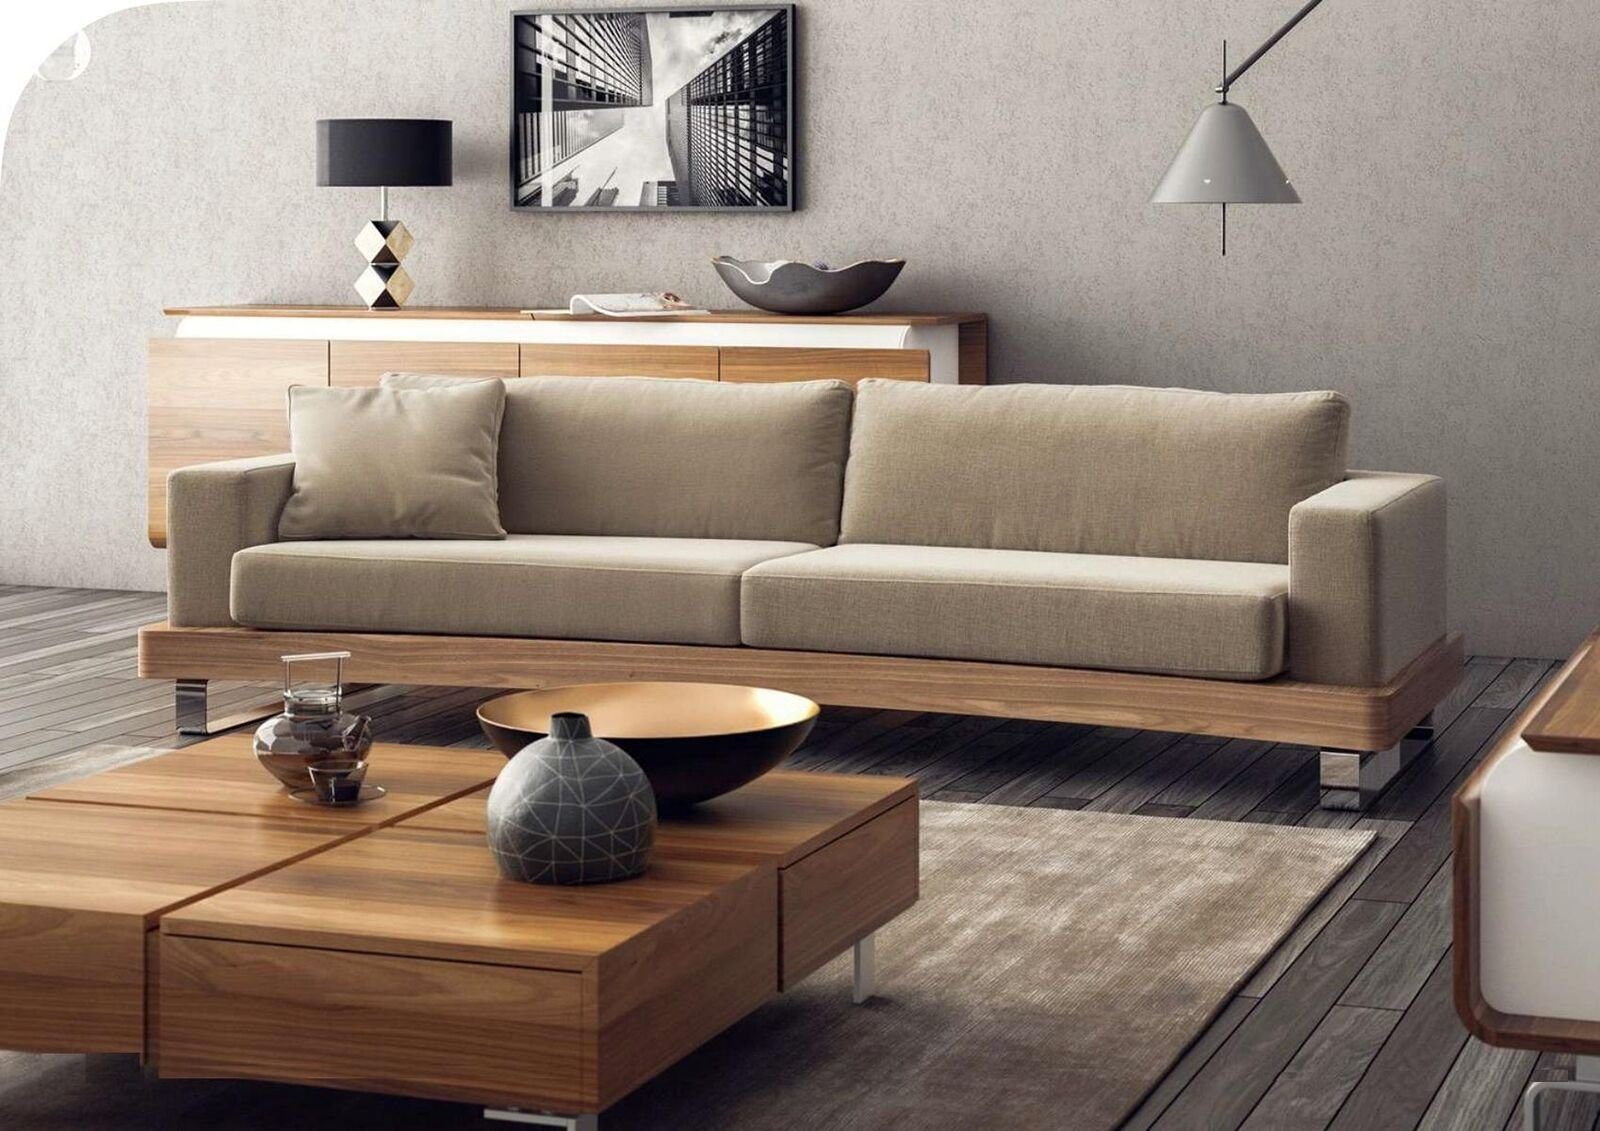 Zweisitzer 2 Sofas Dreisitzer Made Sofa JVmoebel in Europa Luxus, Couchen Sofa Teile, Wohnzimmergarnitu